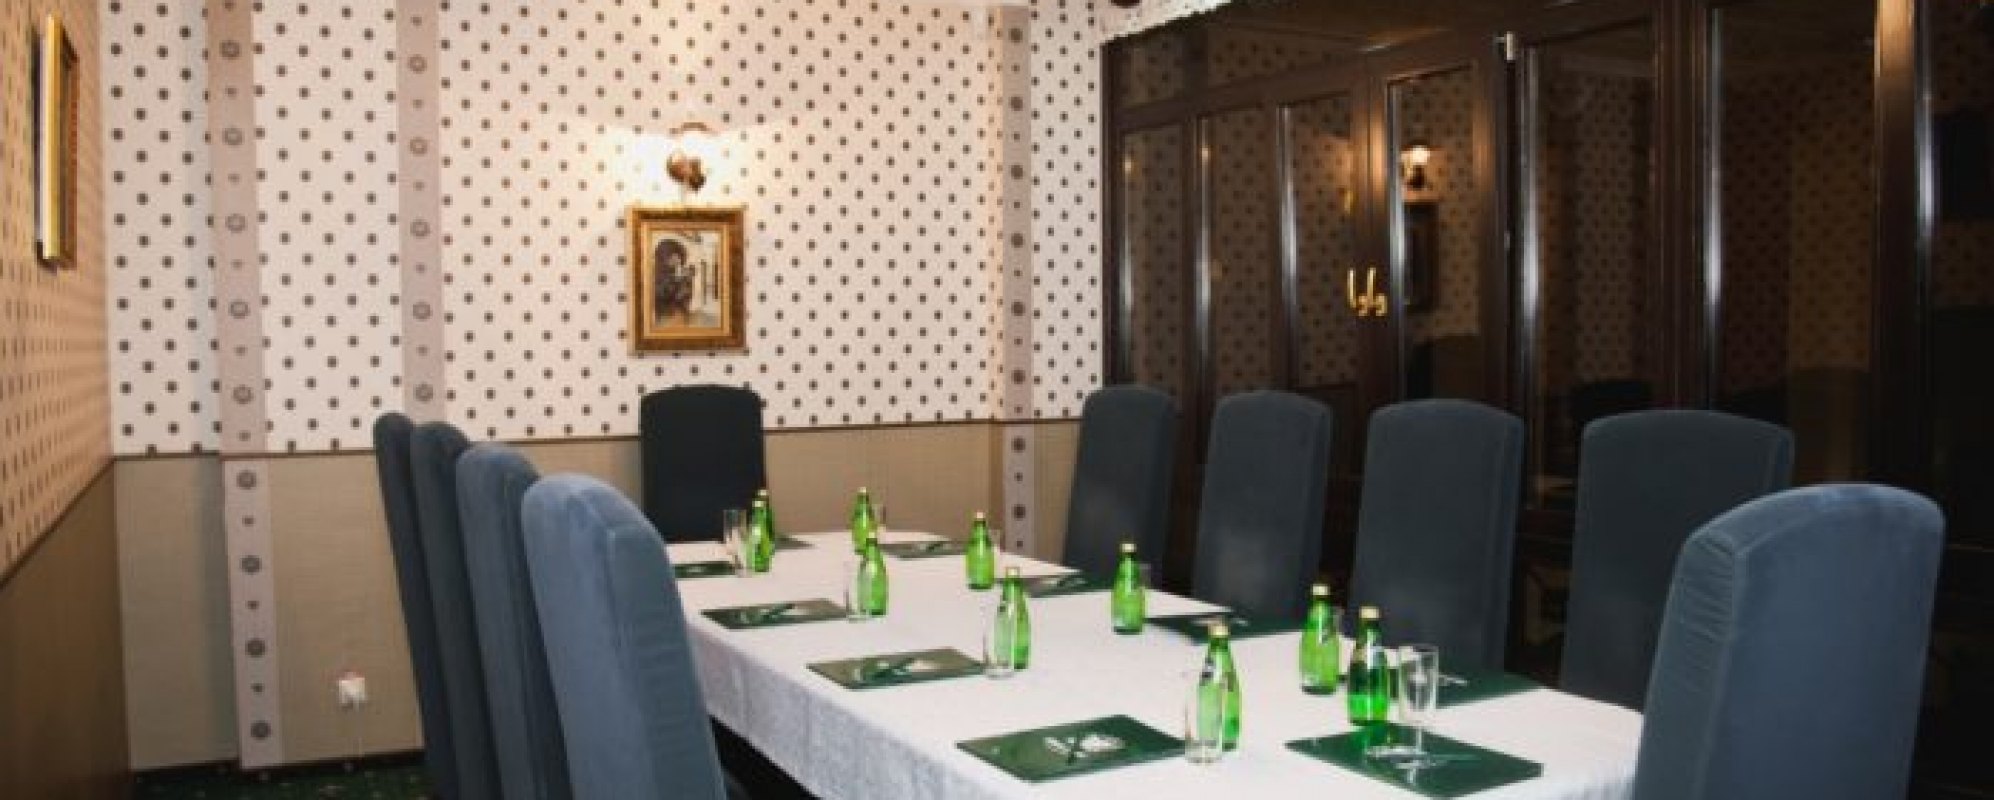 Фотографии комнаты для переговоров VIP-зал переговоров